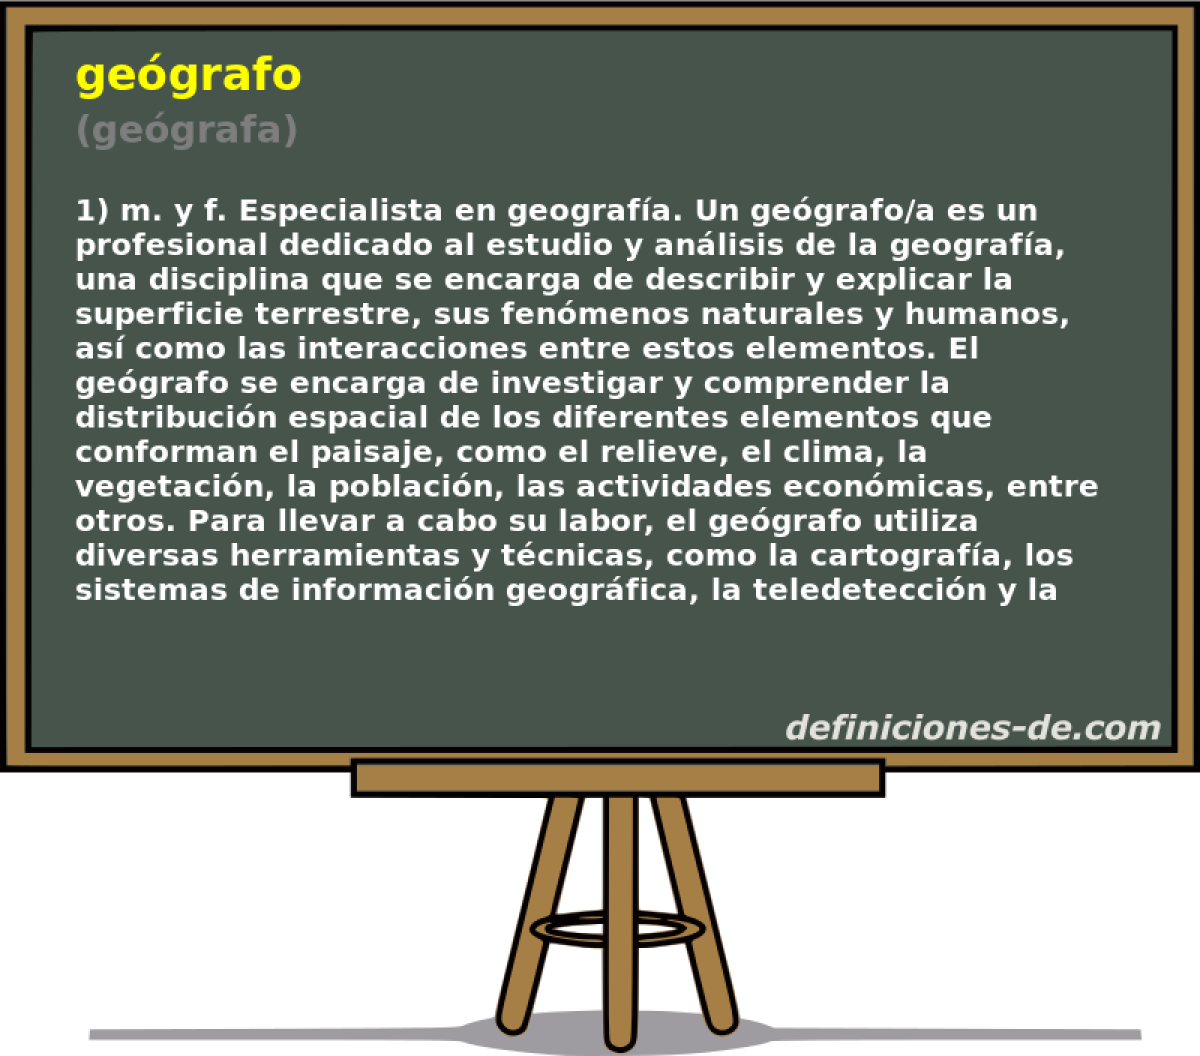 gegrafo (gegrafa)